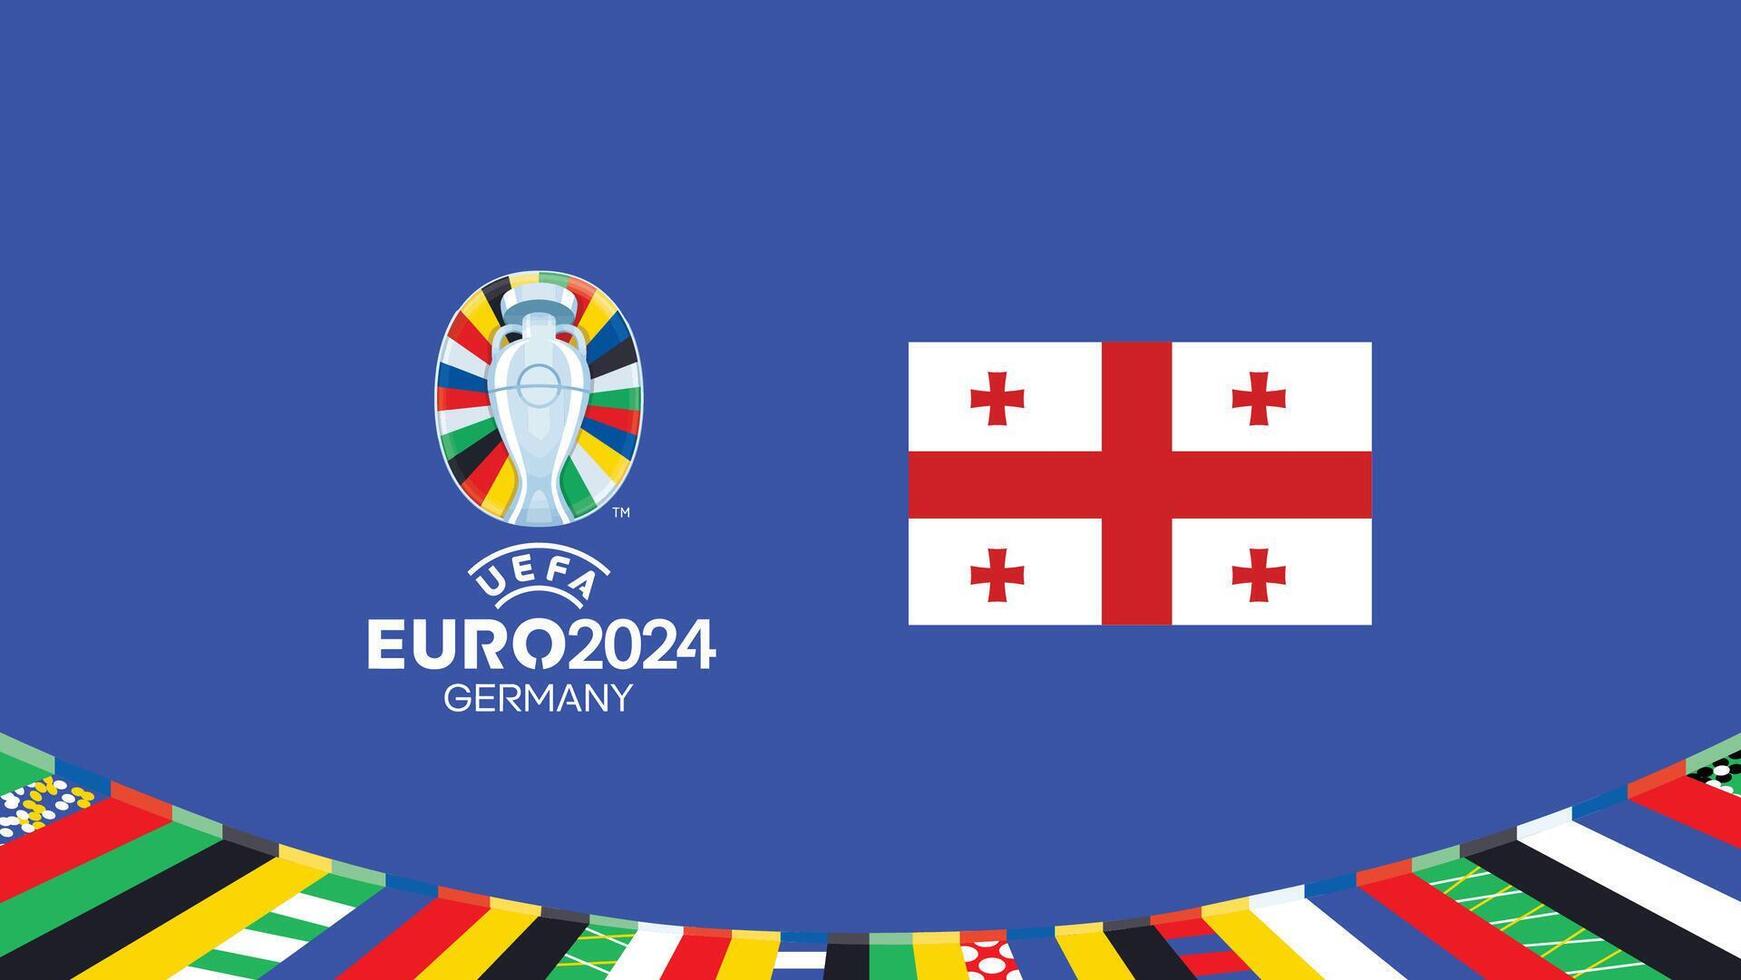 euro 2024 Géorgie drapeau emblème équipes conception avec officiel symbole logo abstrait des pays européen Football illustration vecteur